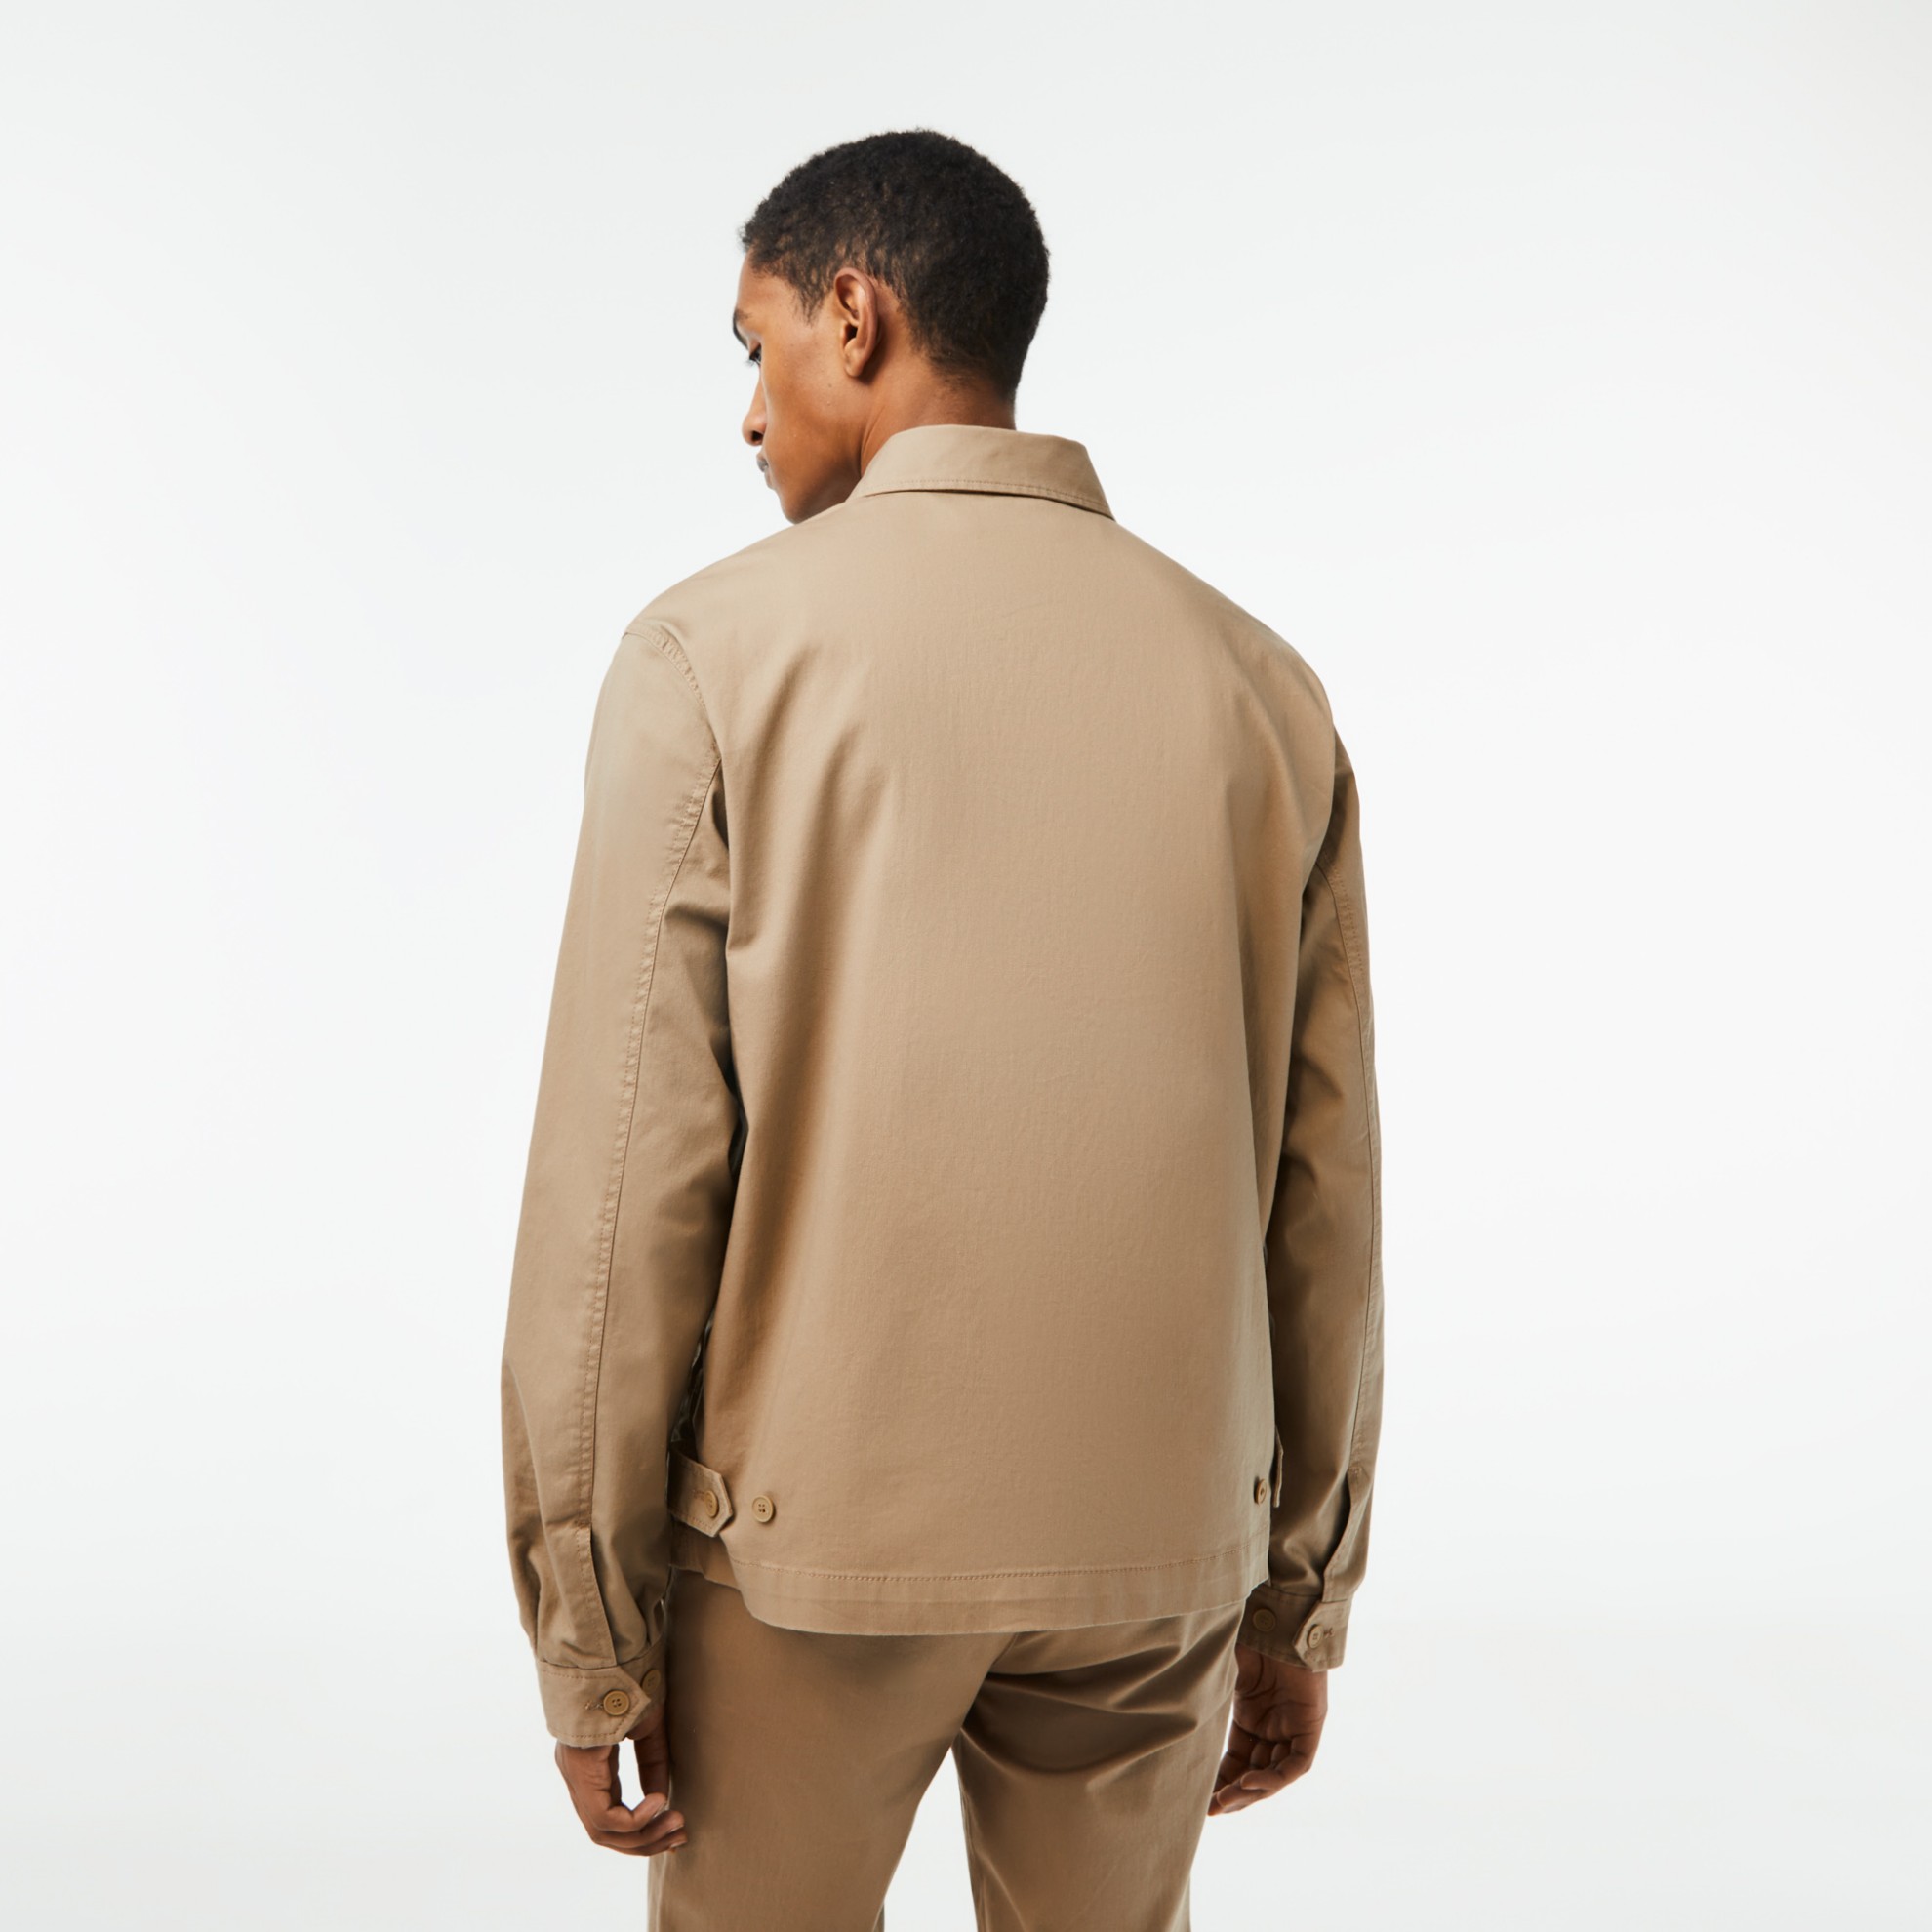 Εικόνα της Ανδρικό Organic Cotton Gabardine Kοντό Jacket με Φερμουάρ